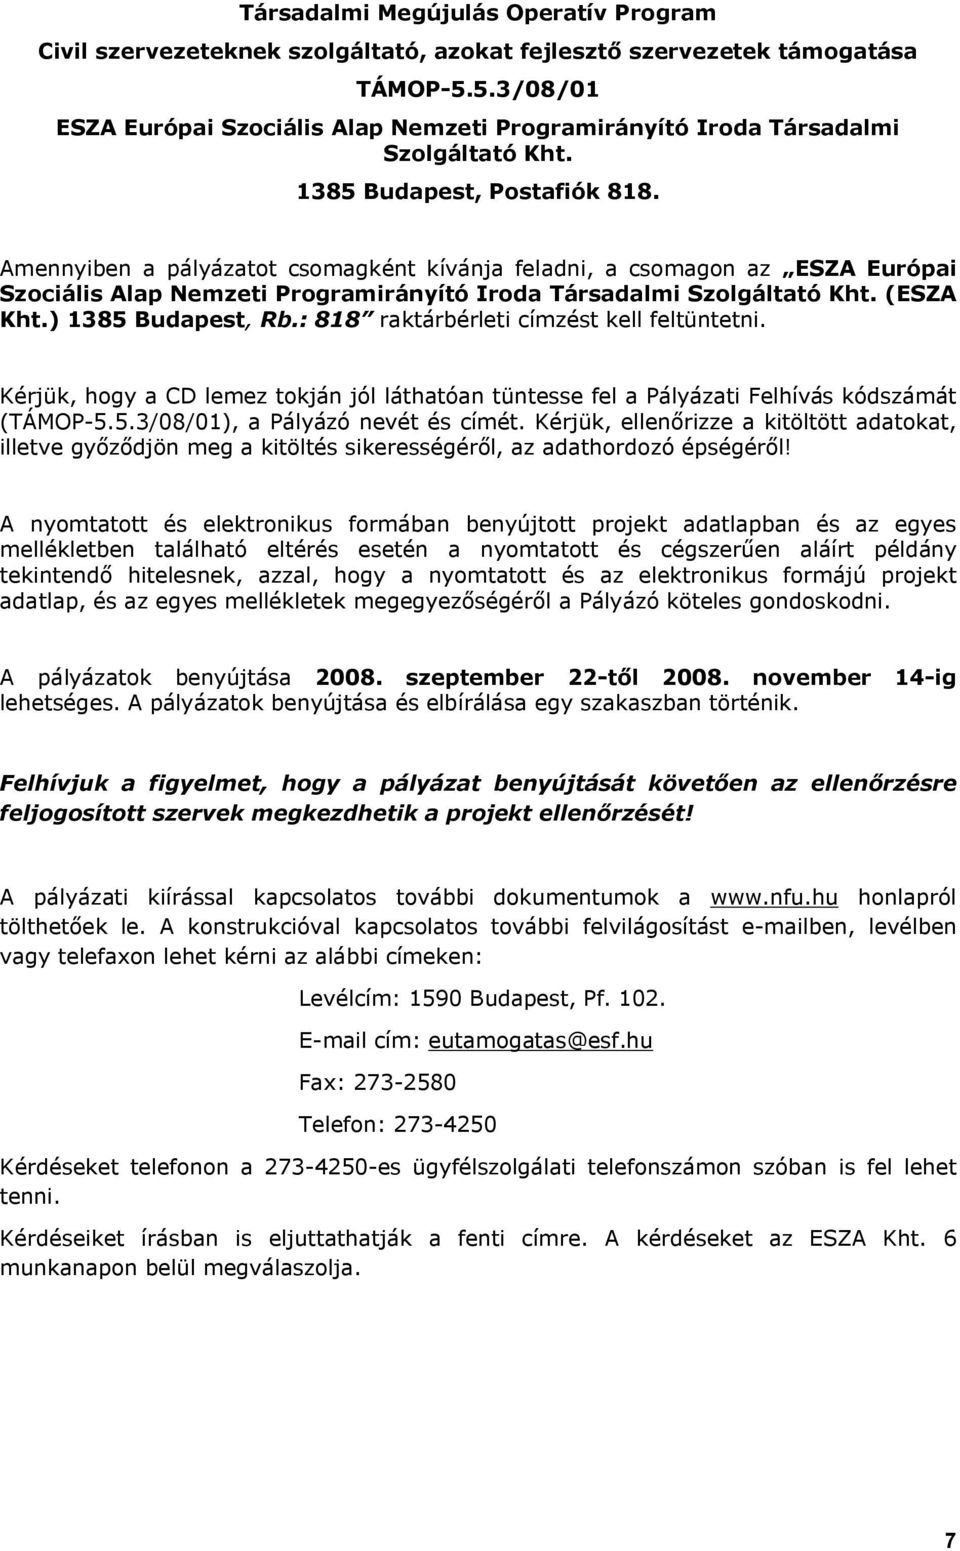 Amennyiben a pályázatot csomagként kívánja feladni, a csomagon az ESZA Európai Szociális Alap Nemzeti Programirányító Iroda Társadalmi Szolgáltató Kht. (ESZA Kht.) 1385 Budapest, Rb.